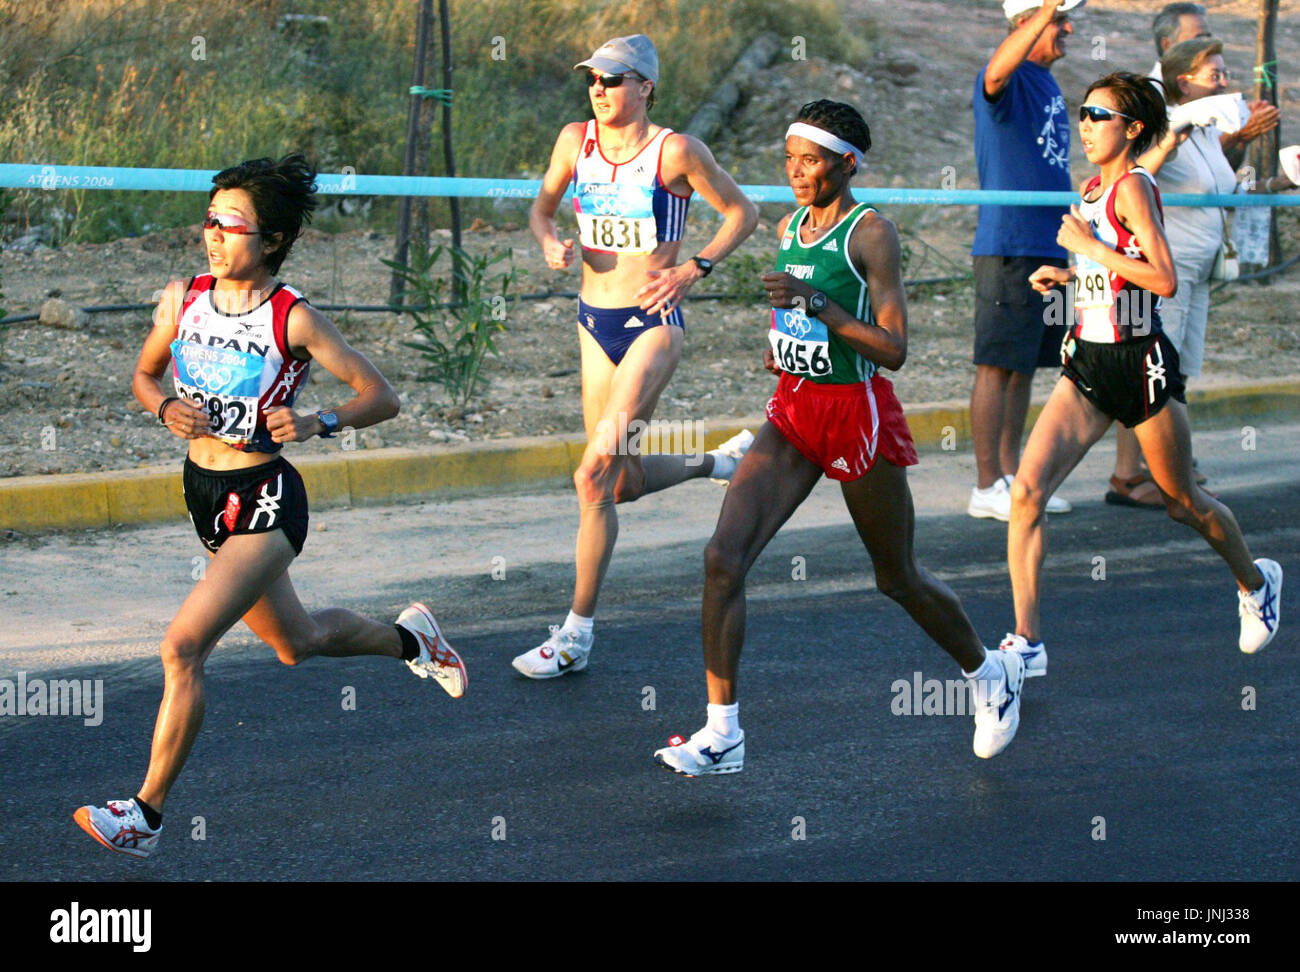 Atenas, Grecia - Japonesa Mizuki Noguchi lidera la carrera de maratón  femenino en torno a la marca de 27 kilómetros, donde empezó tirando para  ganar la medalla de oro en los Juegos